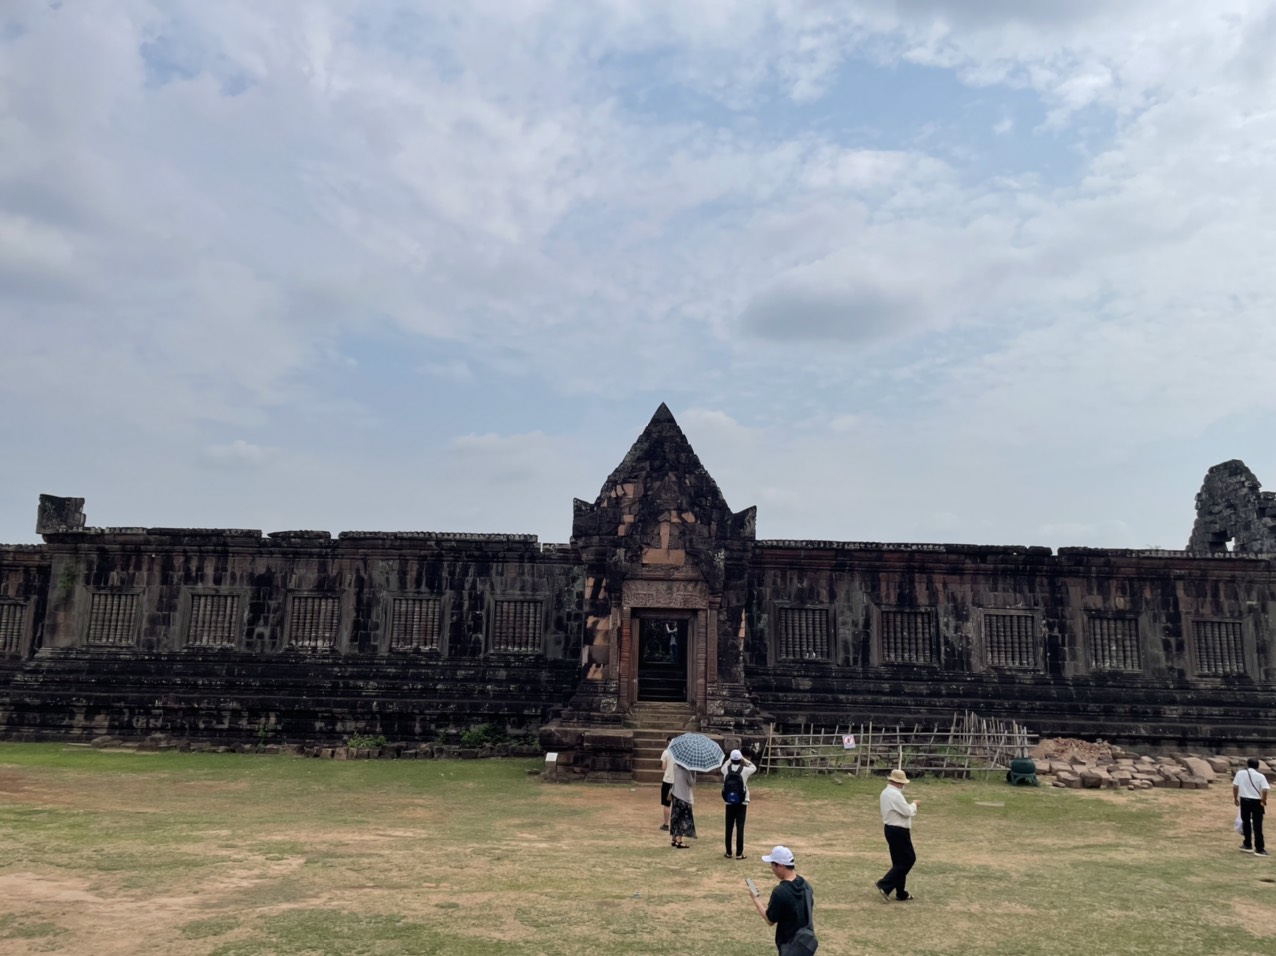 Tham quan ngôi đền cổ nhất Lào - Wat Phou